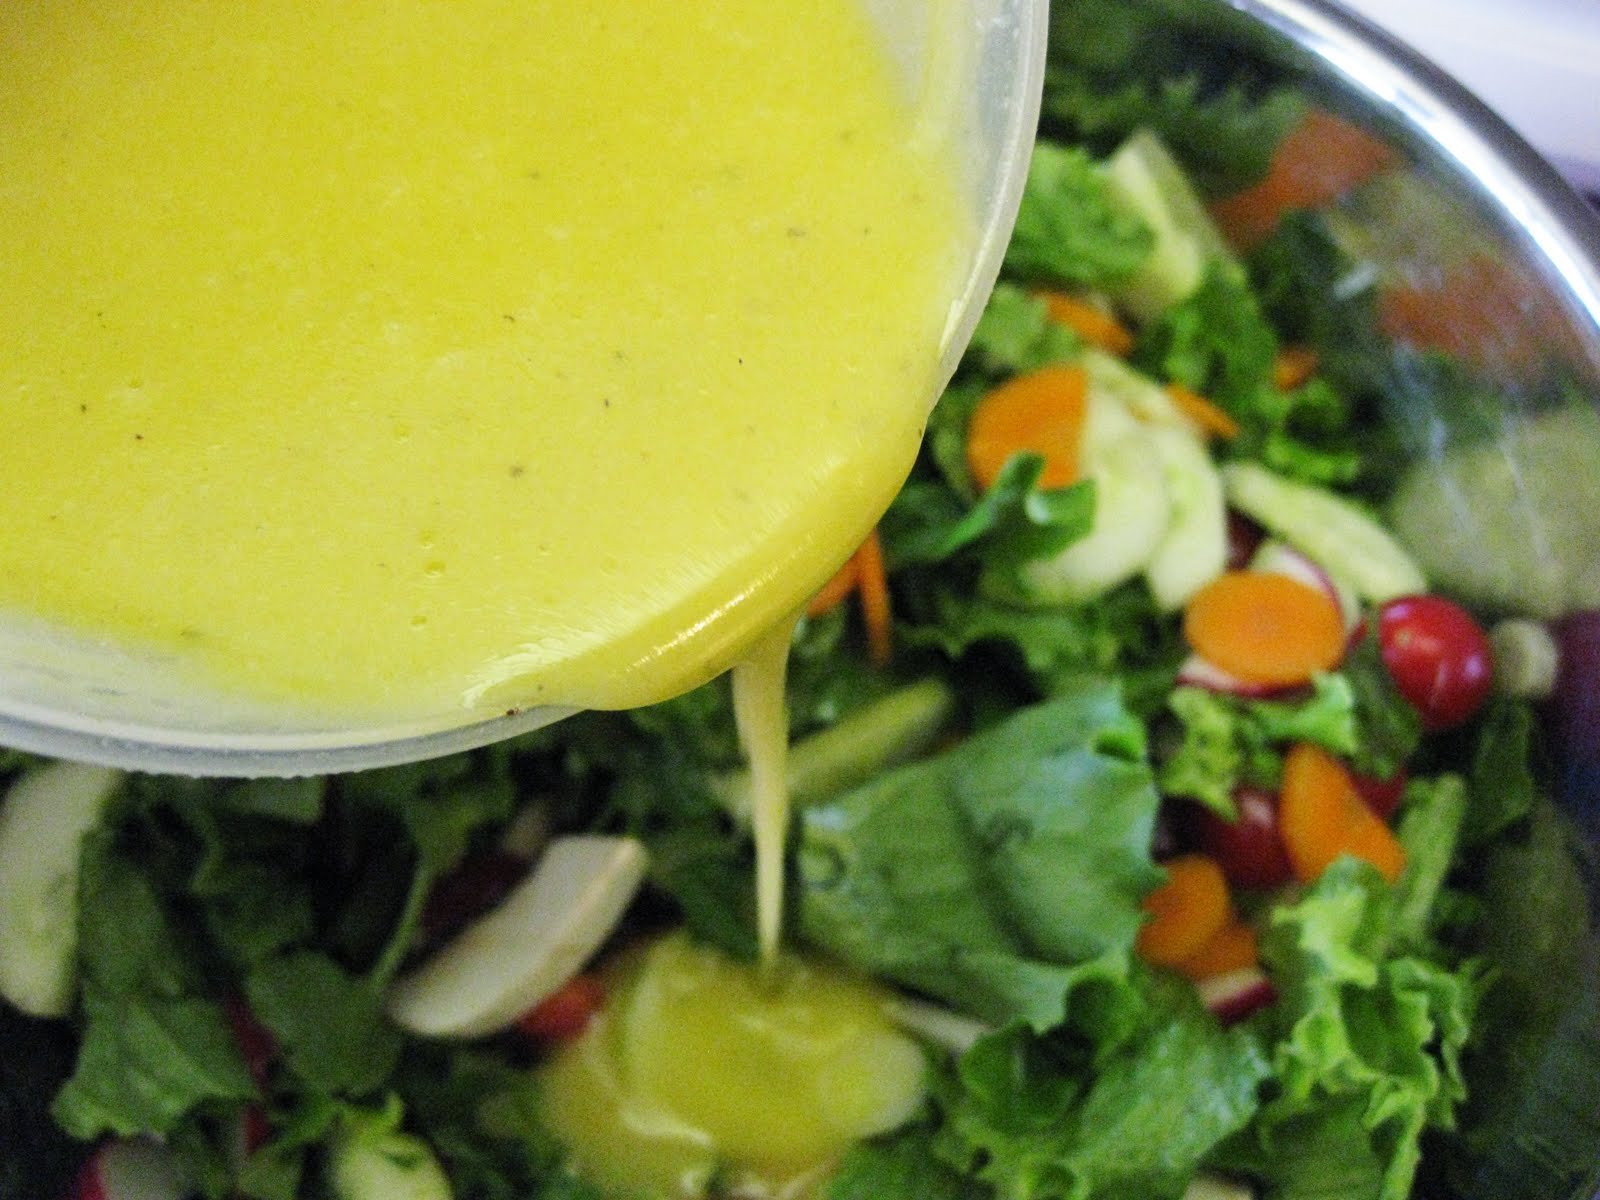 Заправка к овощному салату. Горчичная заправка для салата. Горчичная заправка для салата из овощей. Овощной салат с горчично-лимонной заправкой. Соус для заправки салатов овощных.